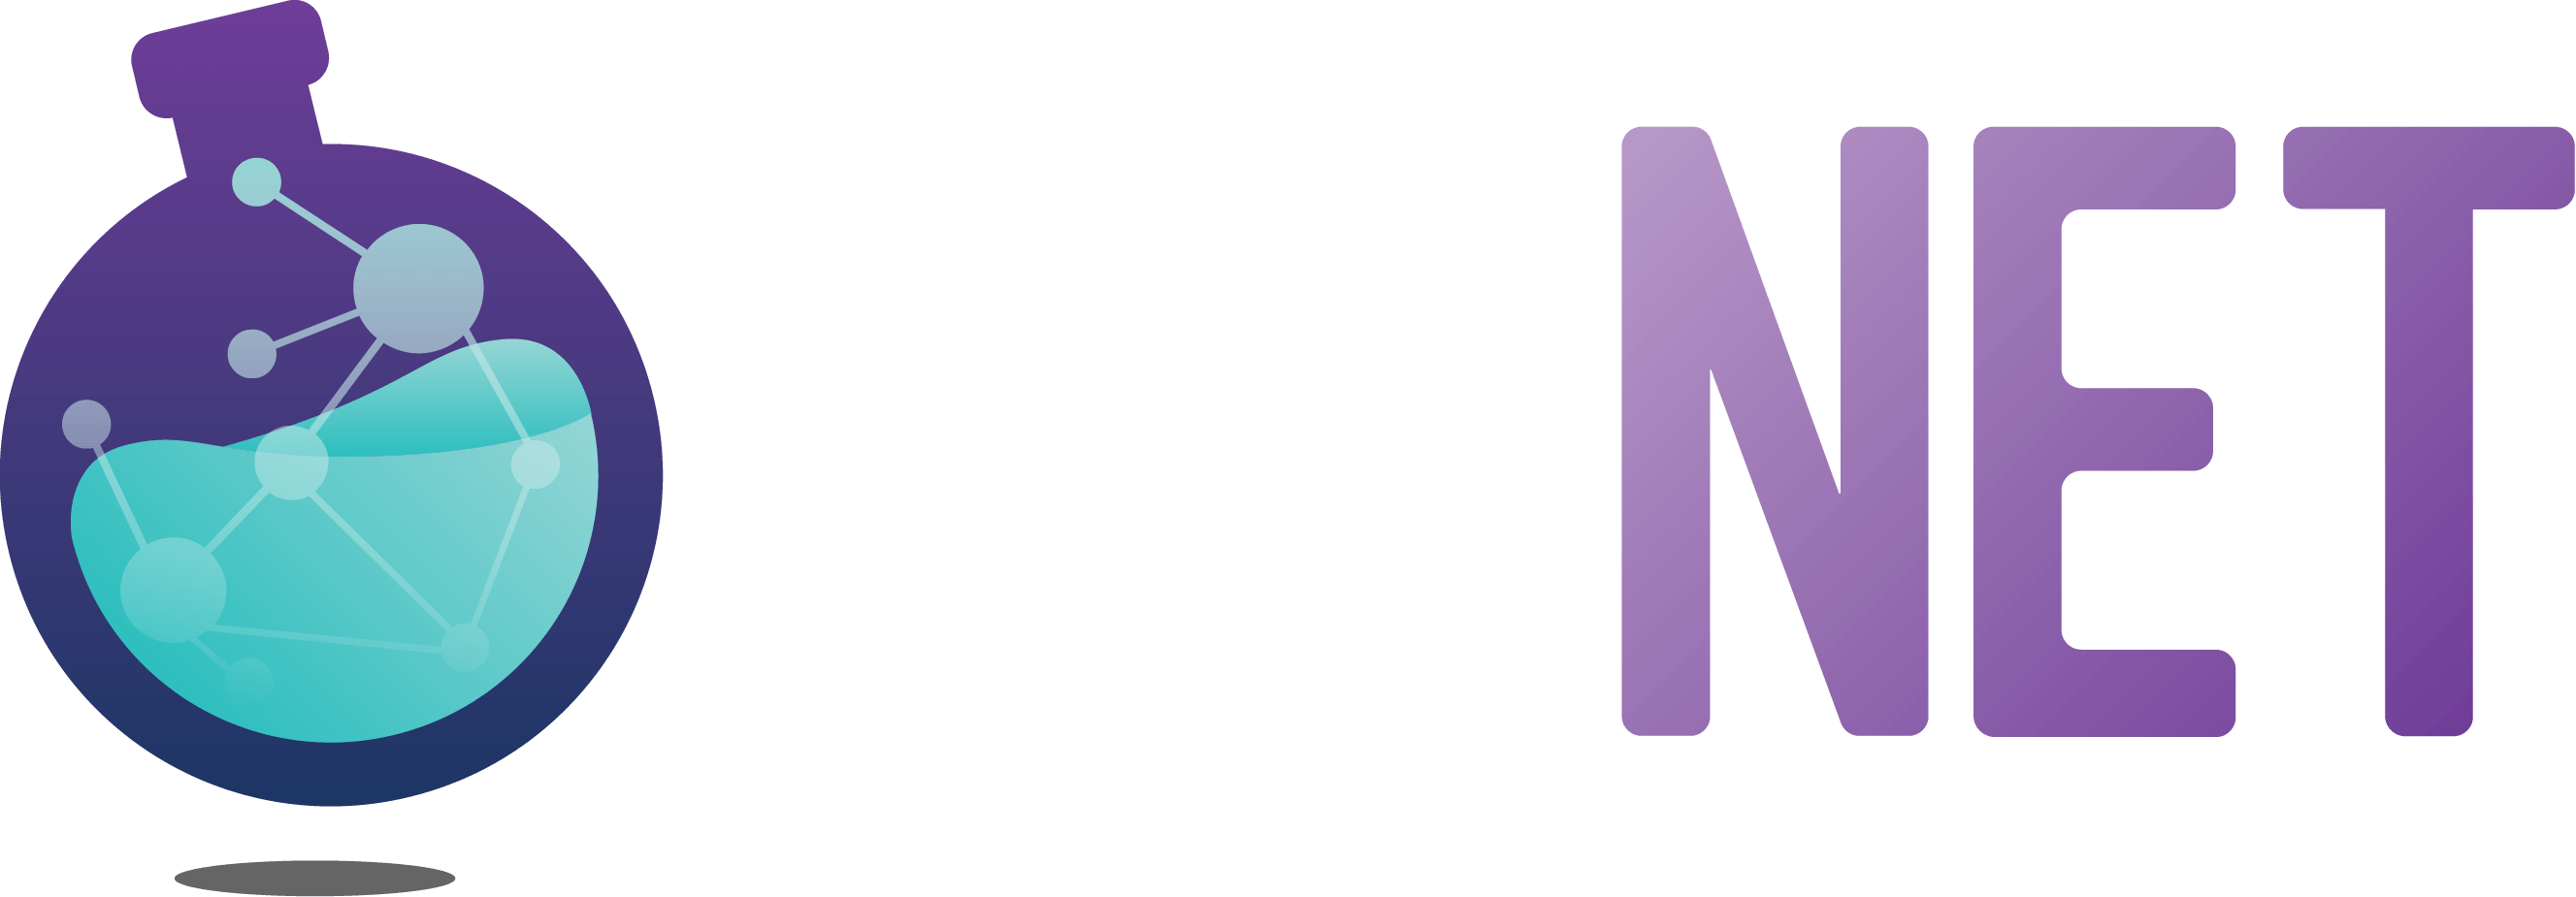 SCINET logo